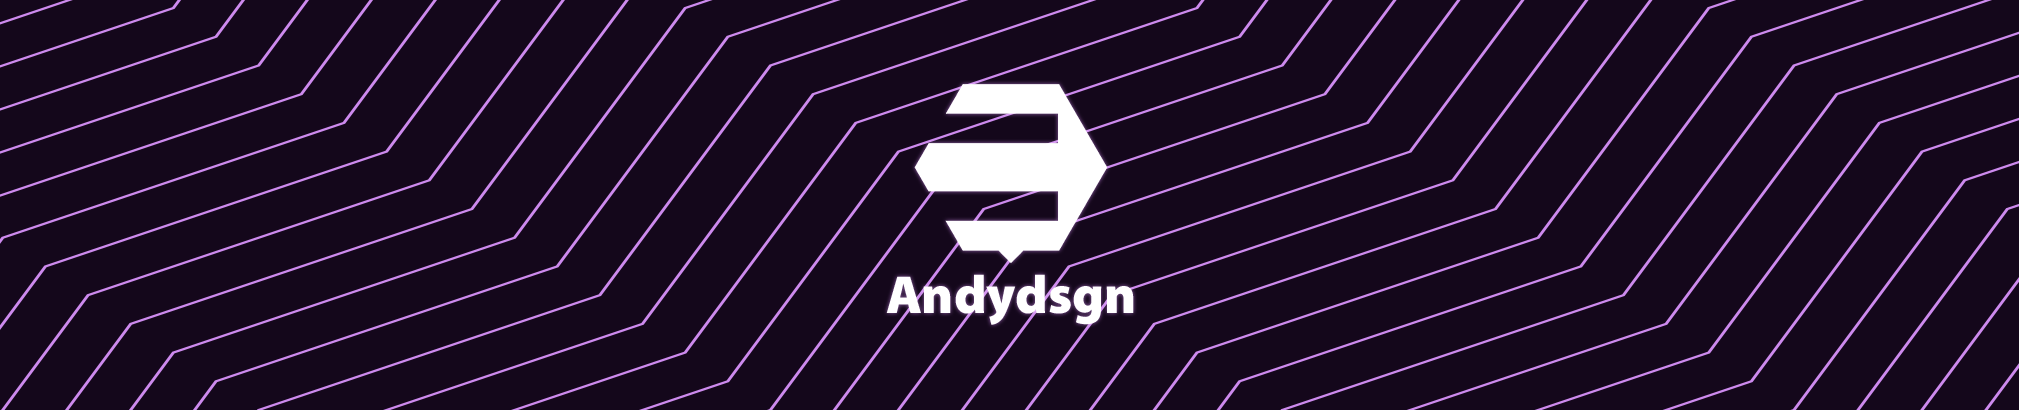 Anderson Santos's profile banner